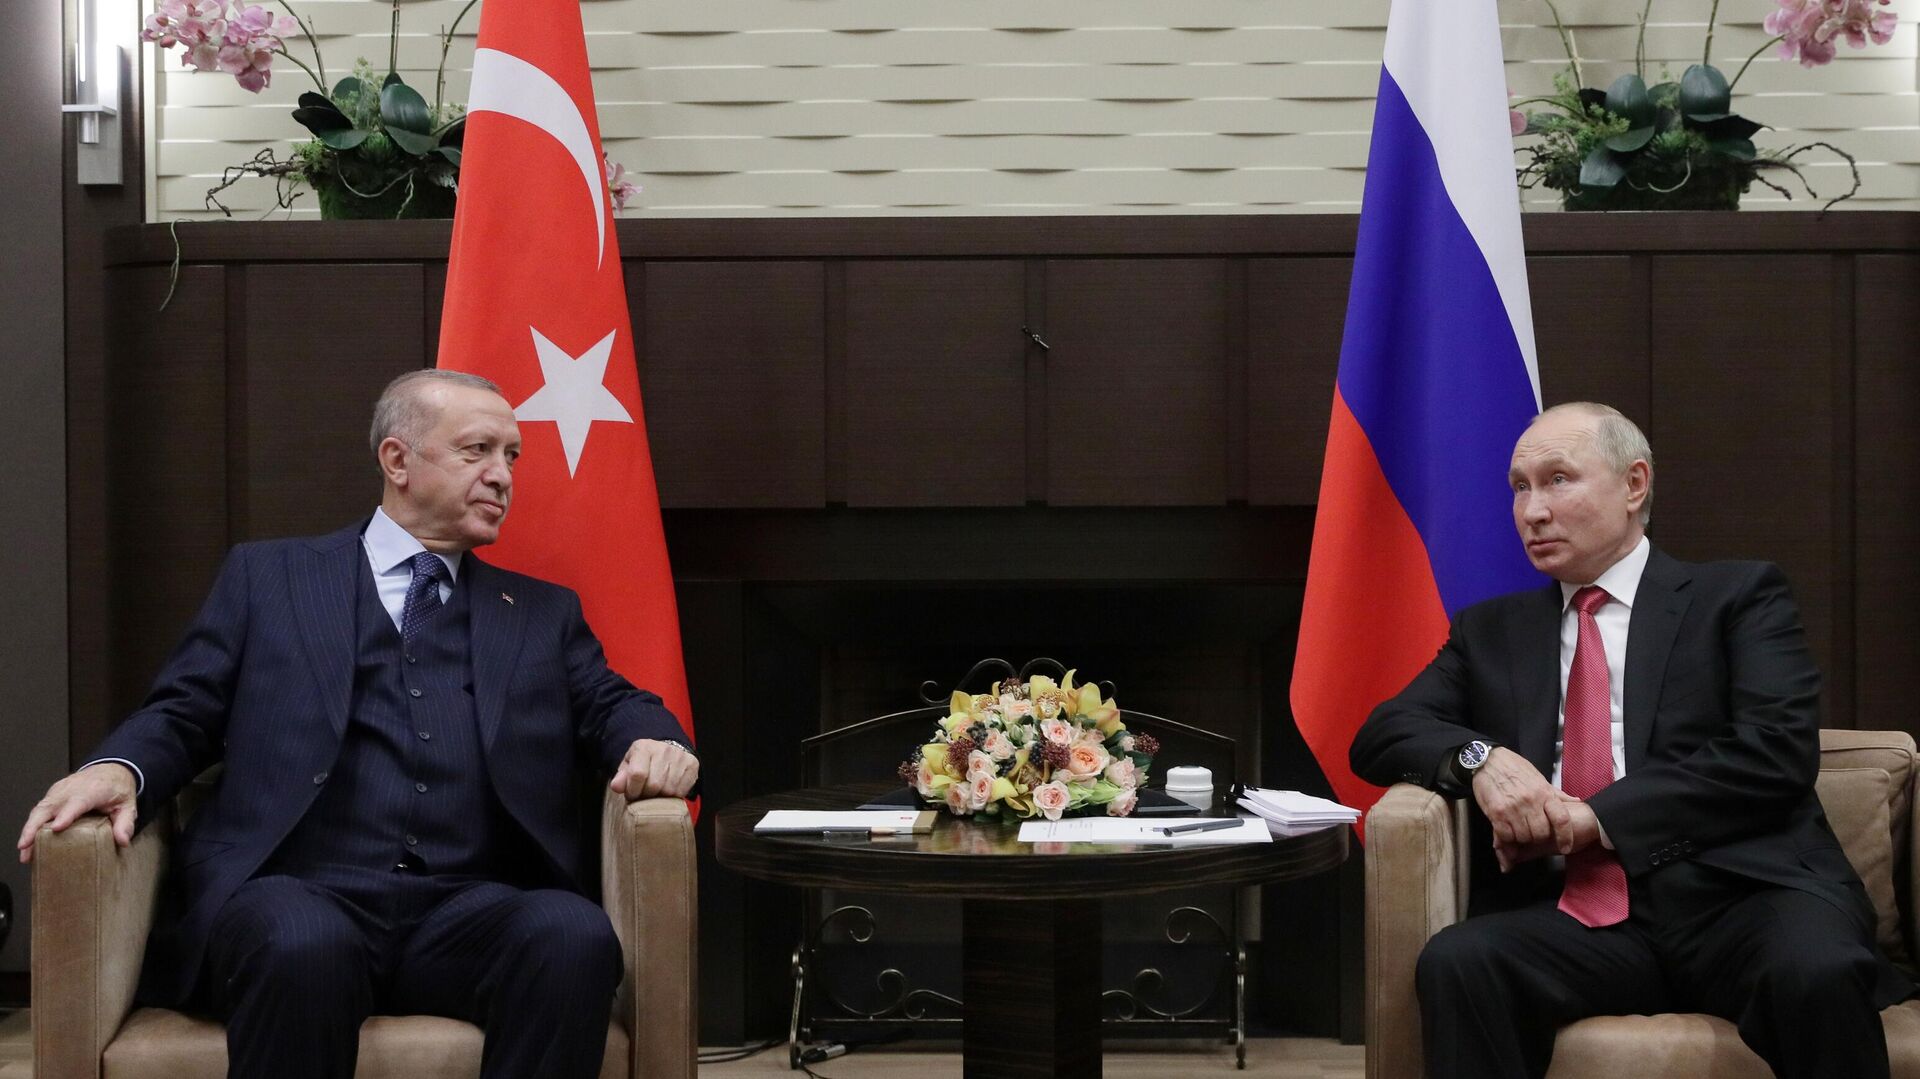 Ռուսաստանի ու Թուրքիայի նախագահներ Վլադիմիր Պուտինն ու Ռեջեփ Թայիփ Էրդողանը Սոչիում - Sputnik Արմենիա, 1920, 19.07.2022